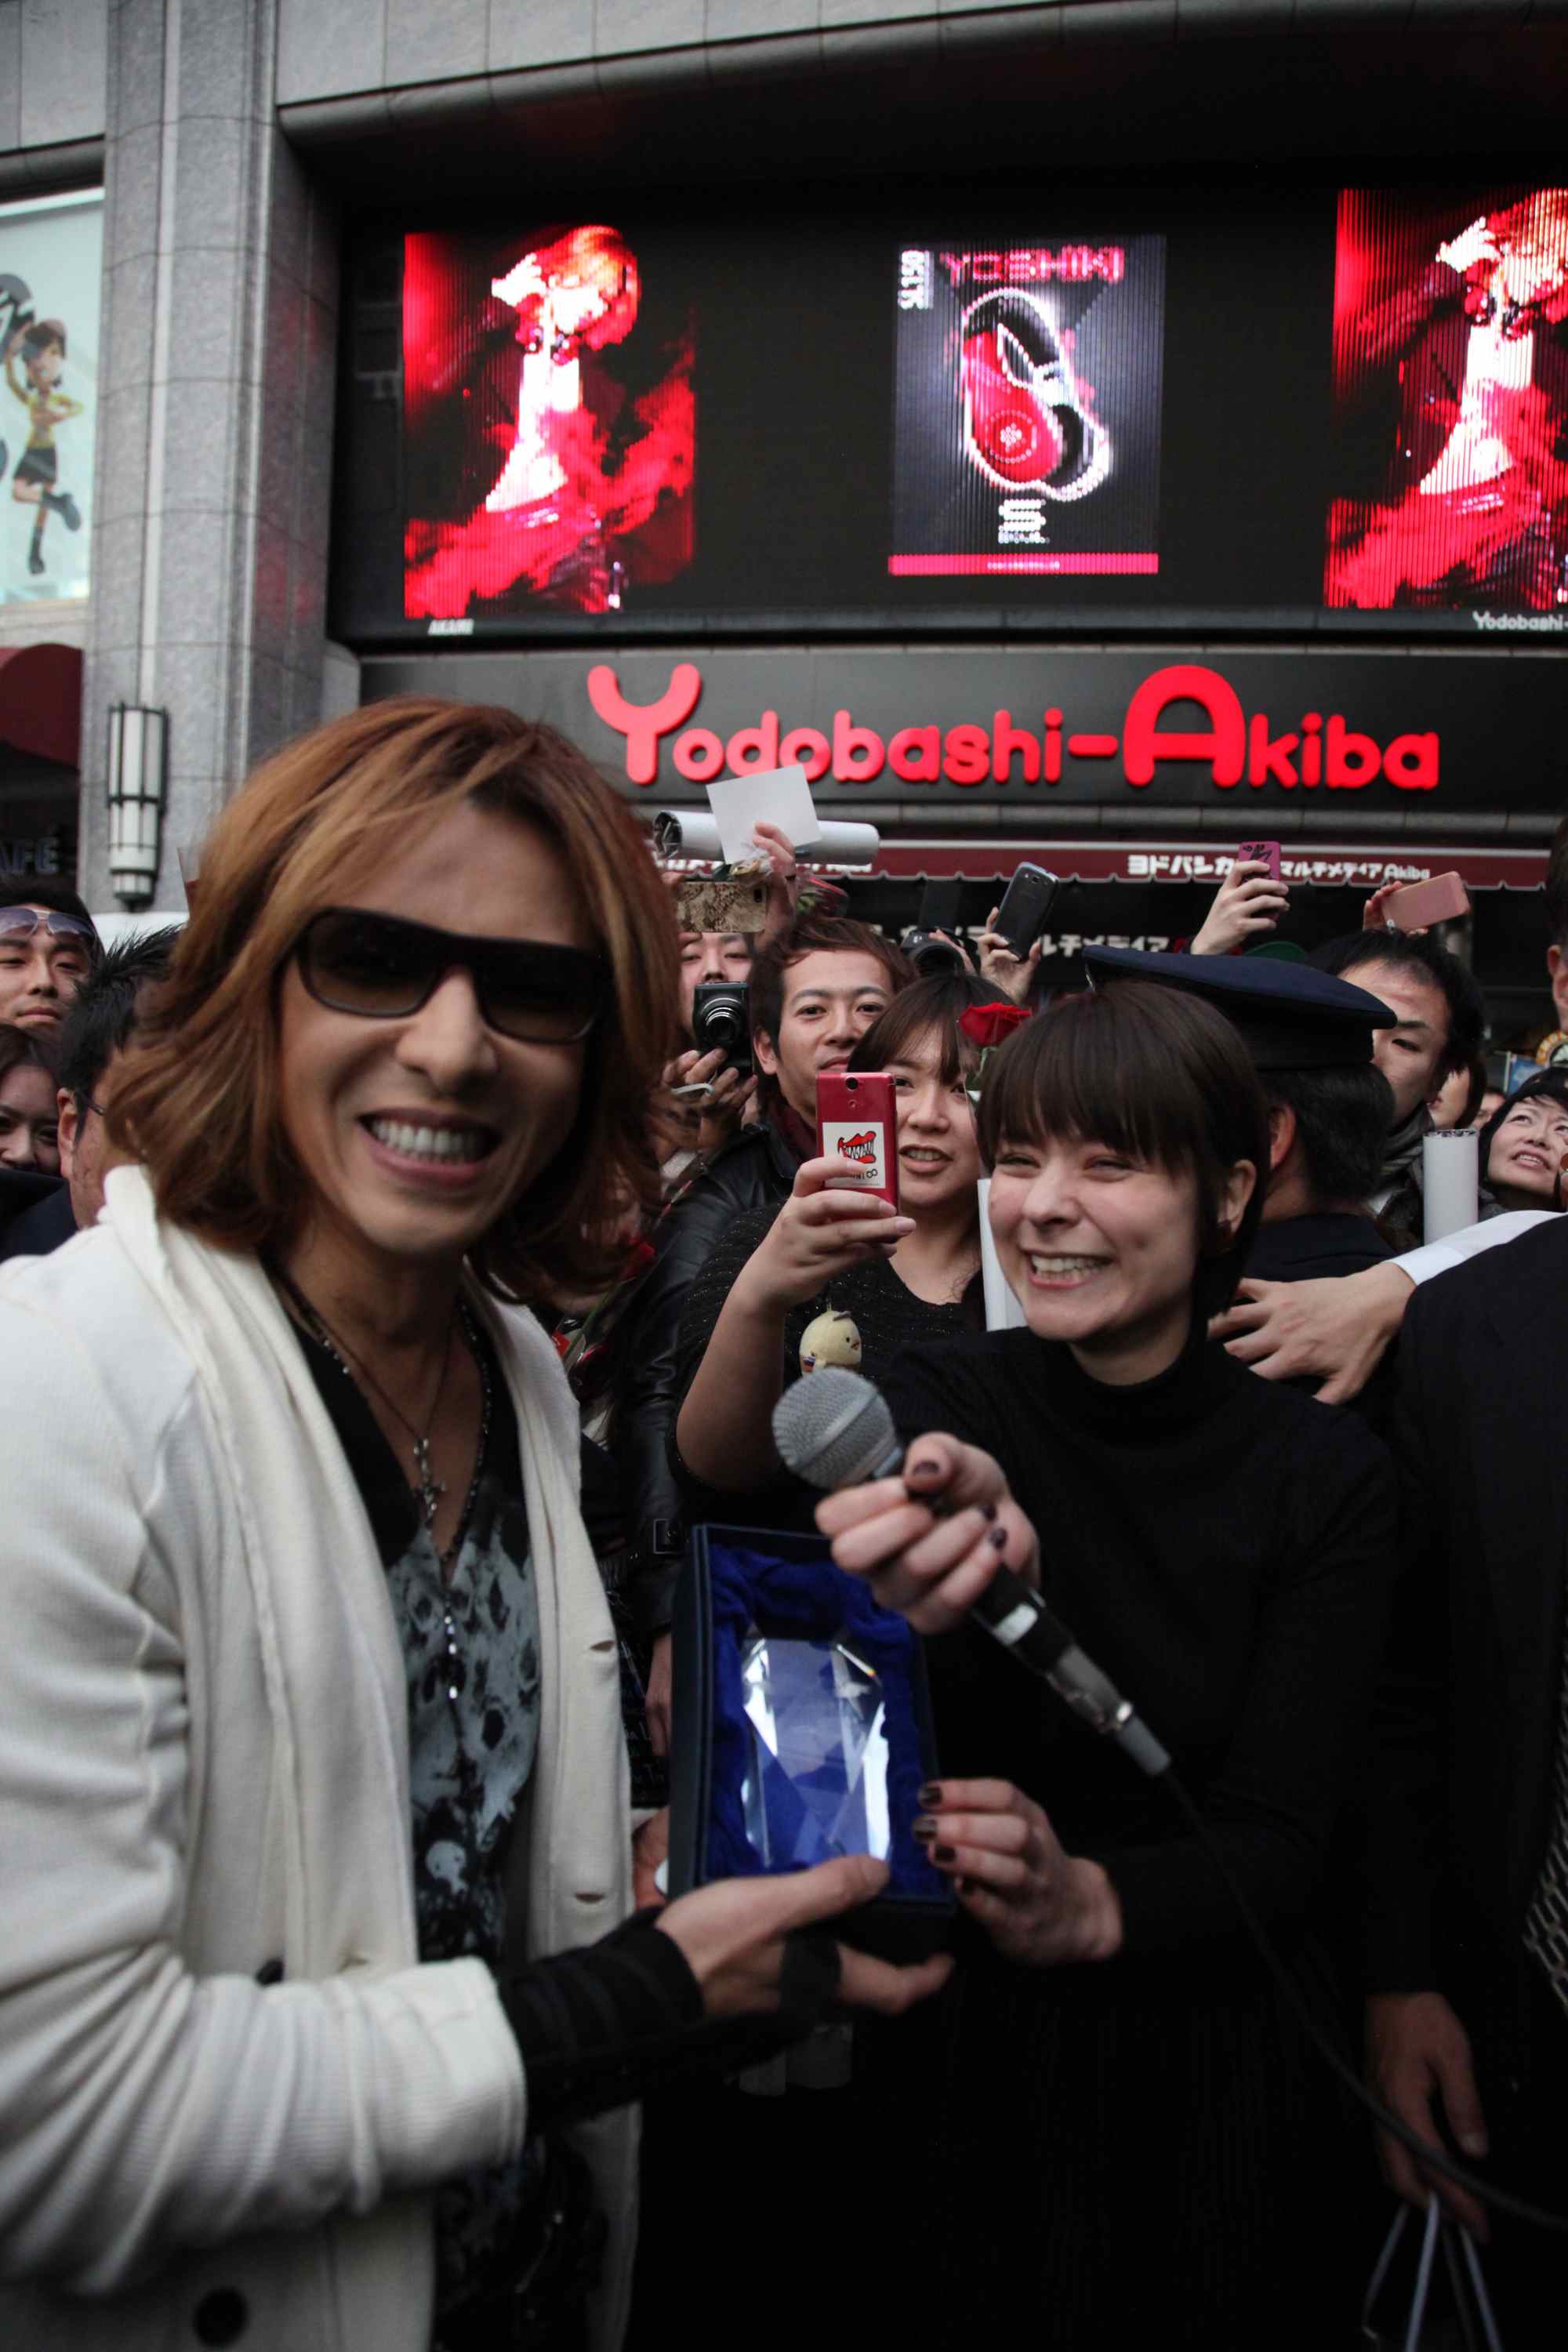 X Japan Yoshiki ニコ生 音楽番組アワード 13 総合1位を獲得 Rockの総合情報サイトvif